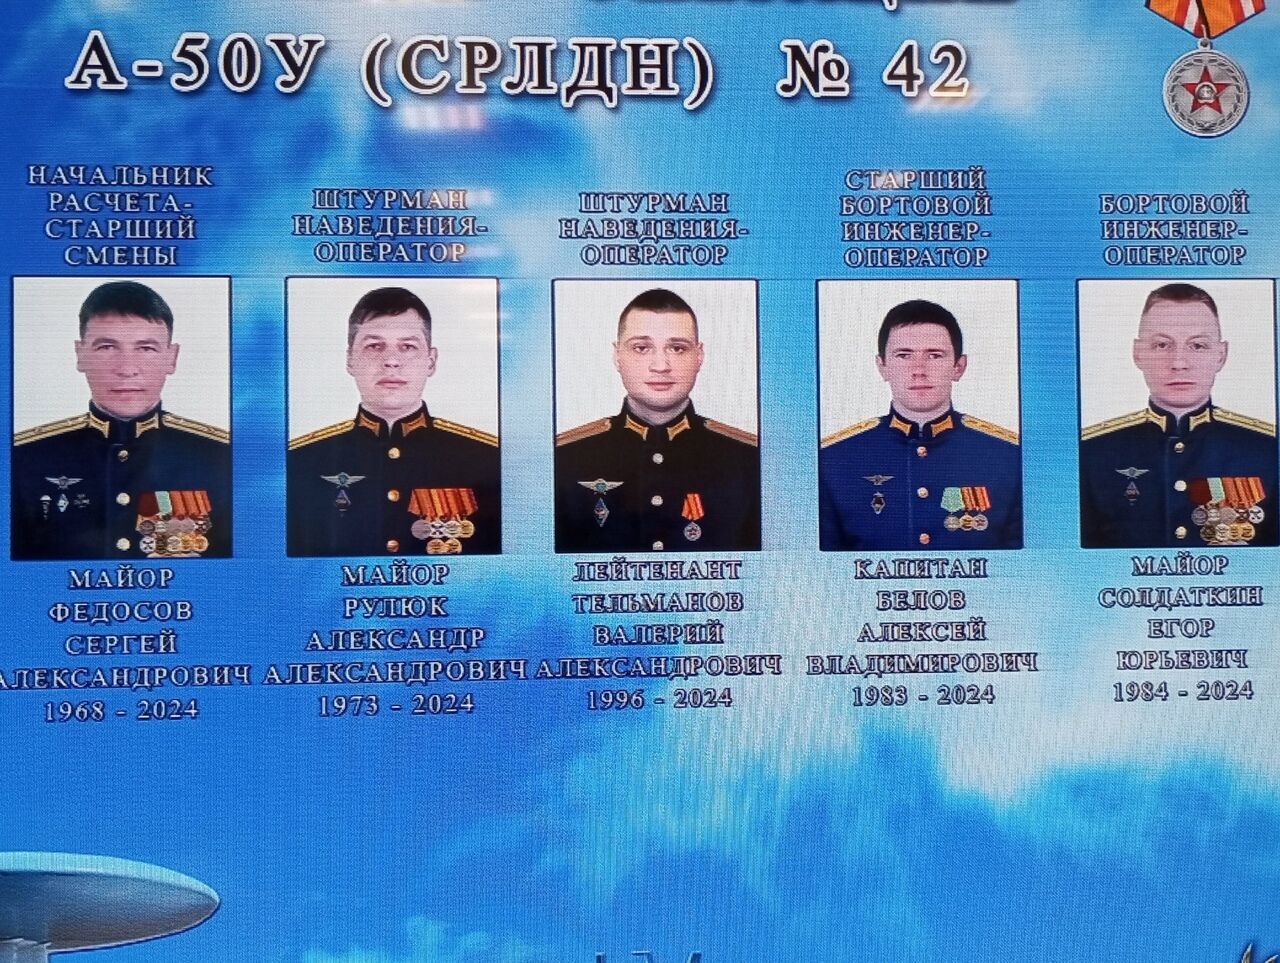 Стали известны имена погибших членов экипажа самолета А-50У, сбитого над Азовским морем